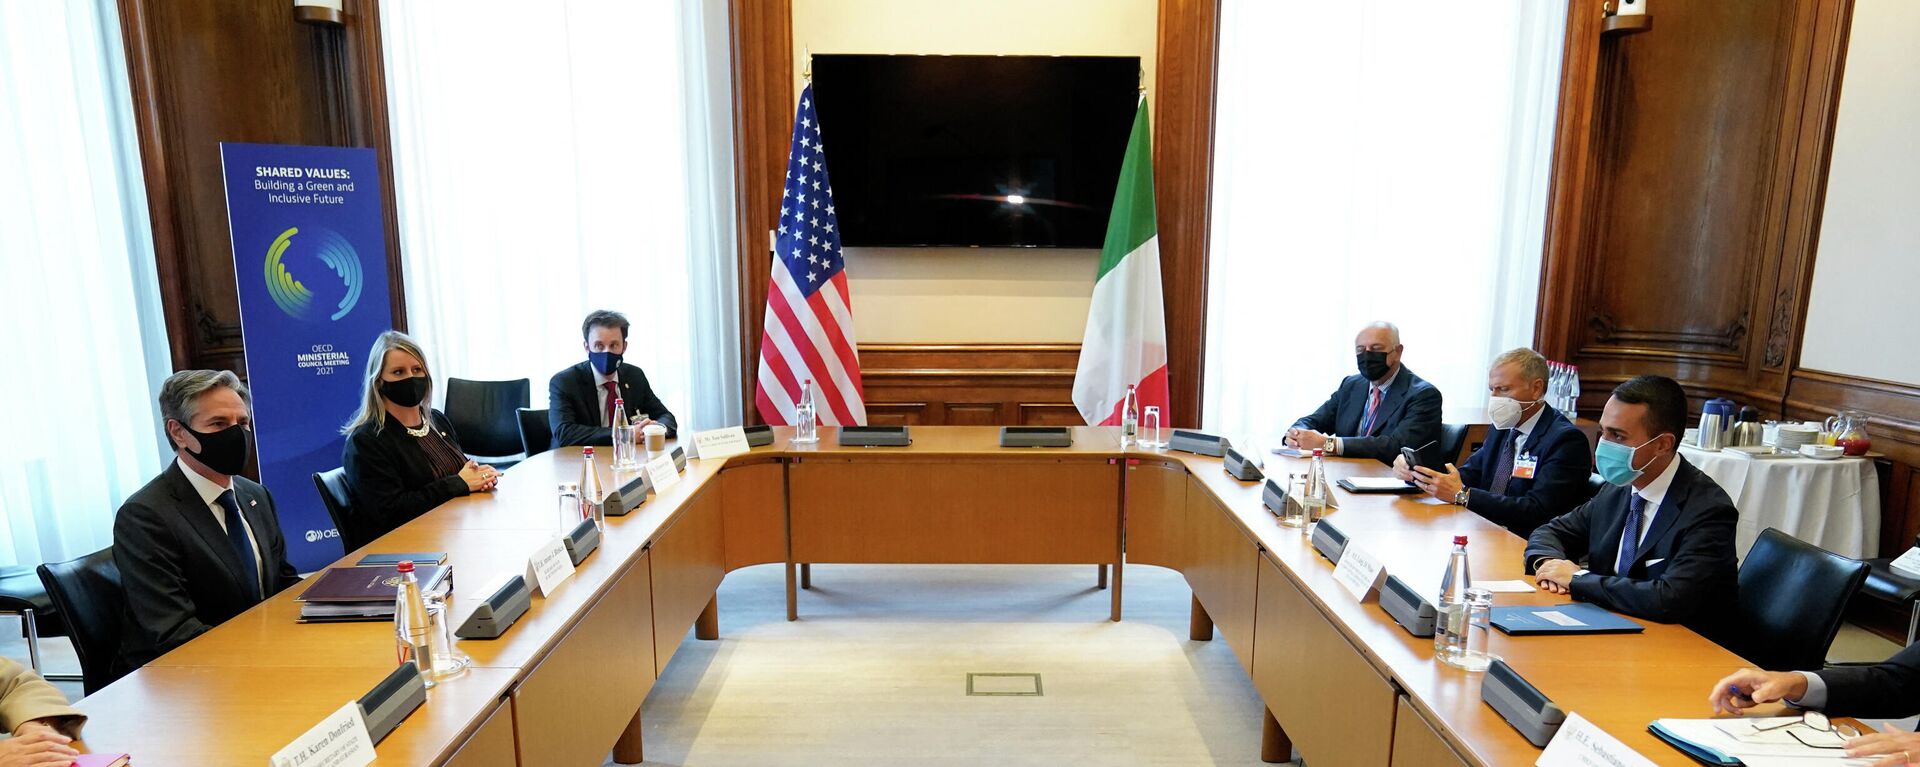 O secretário de Estado Antony Blinken (à esquerda) se encontra com o ministro das Relações Exteriores italiano Luigi Di Maio (à direita) em reunião da Organização para Cooperação e Desenvolvimento Econômico (OCDE), em Paris, em 6 de outubro de 2021 - Sputnik Brasil, 1920, 27.01.2022